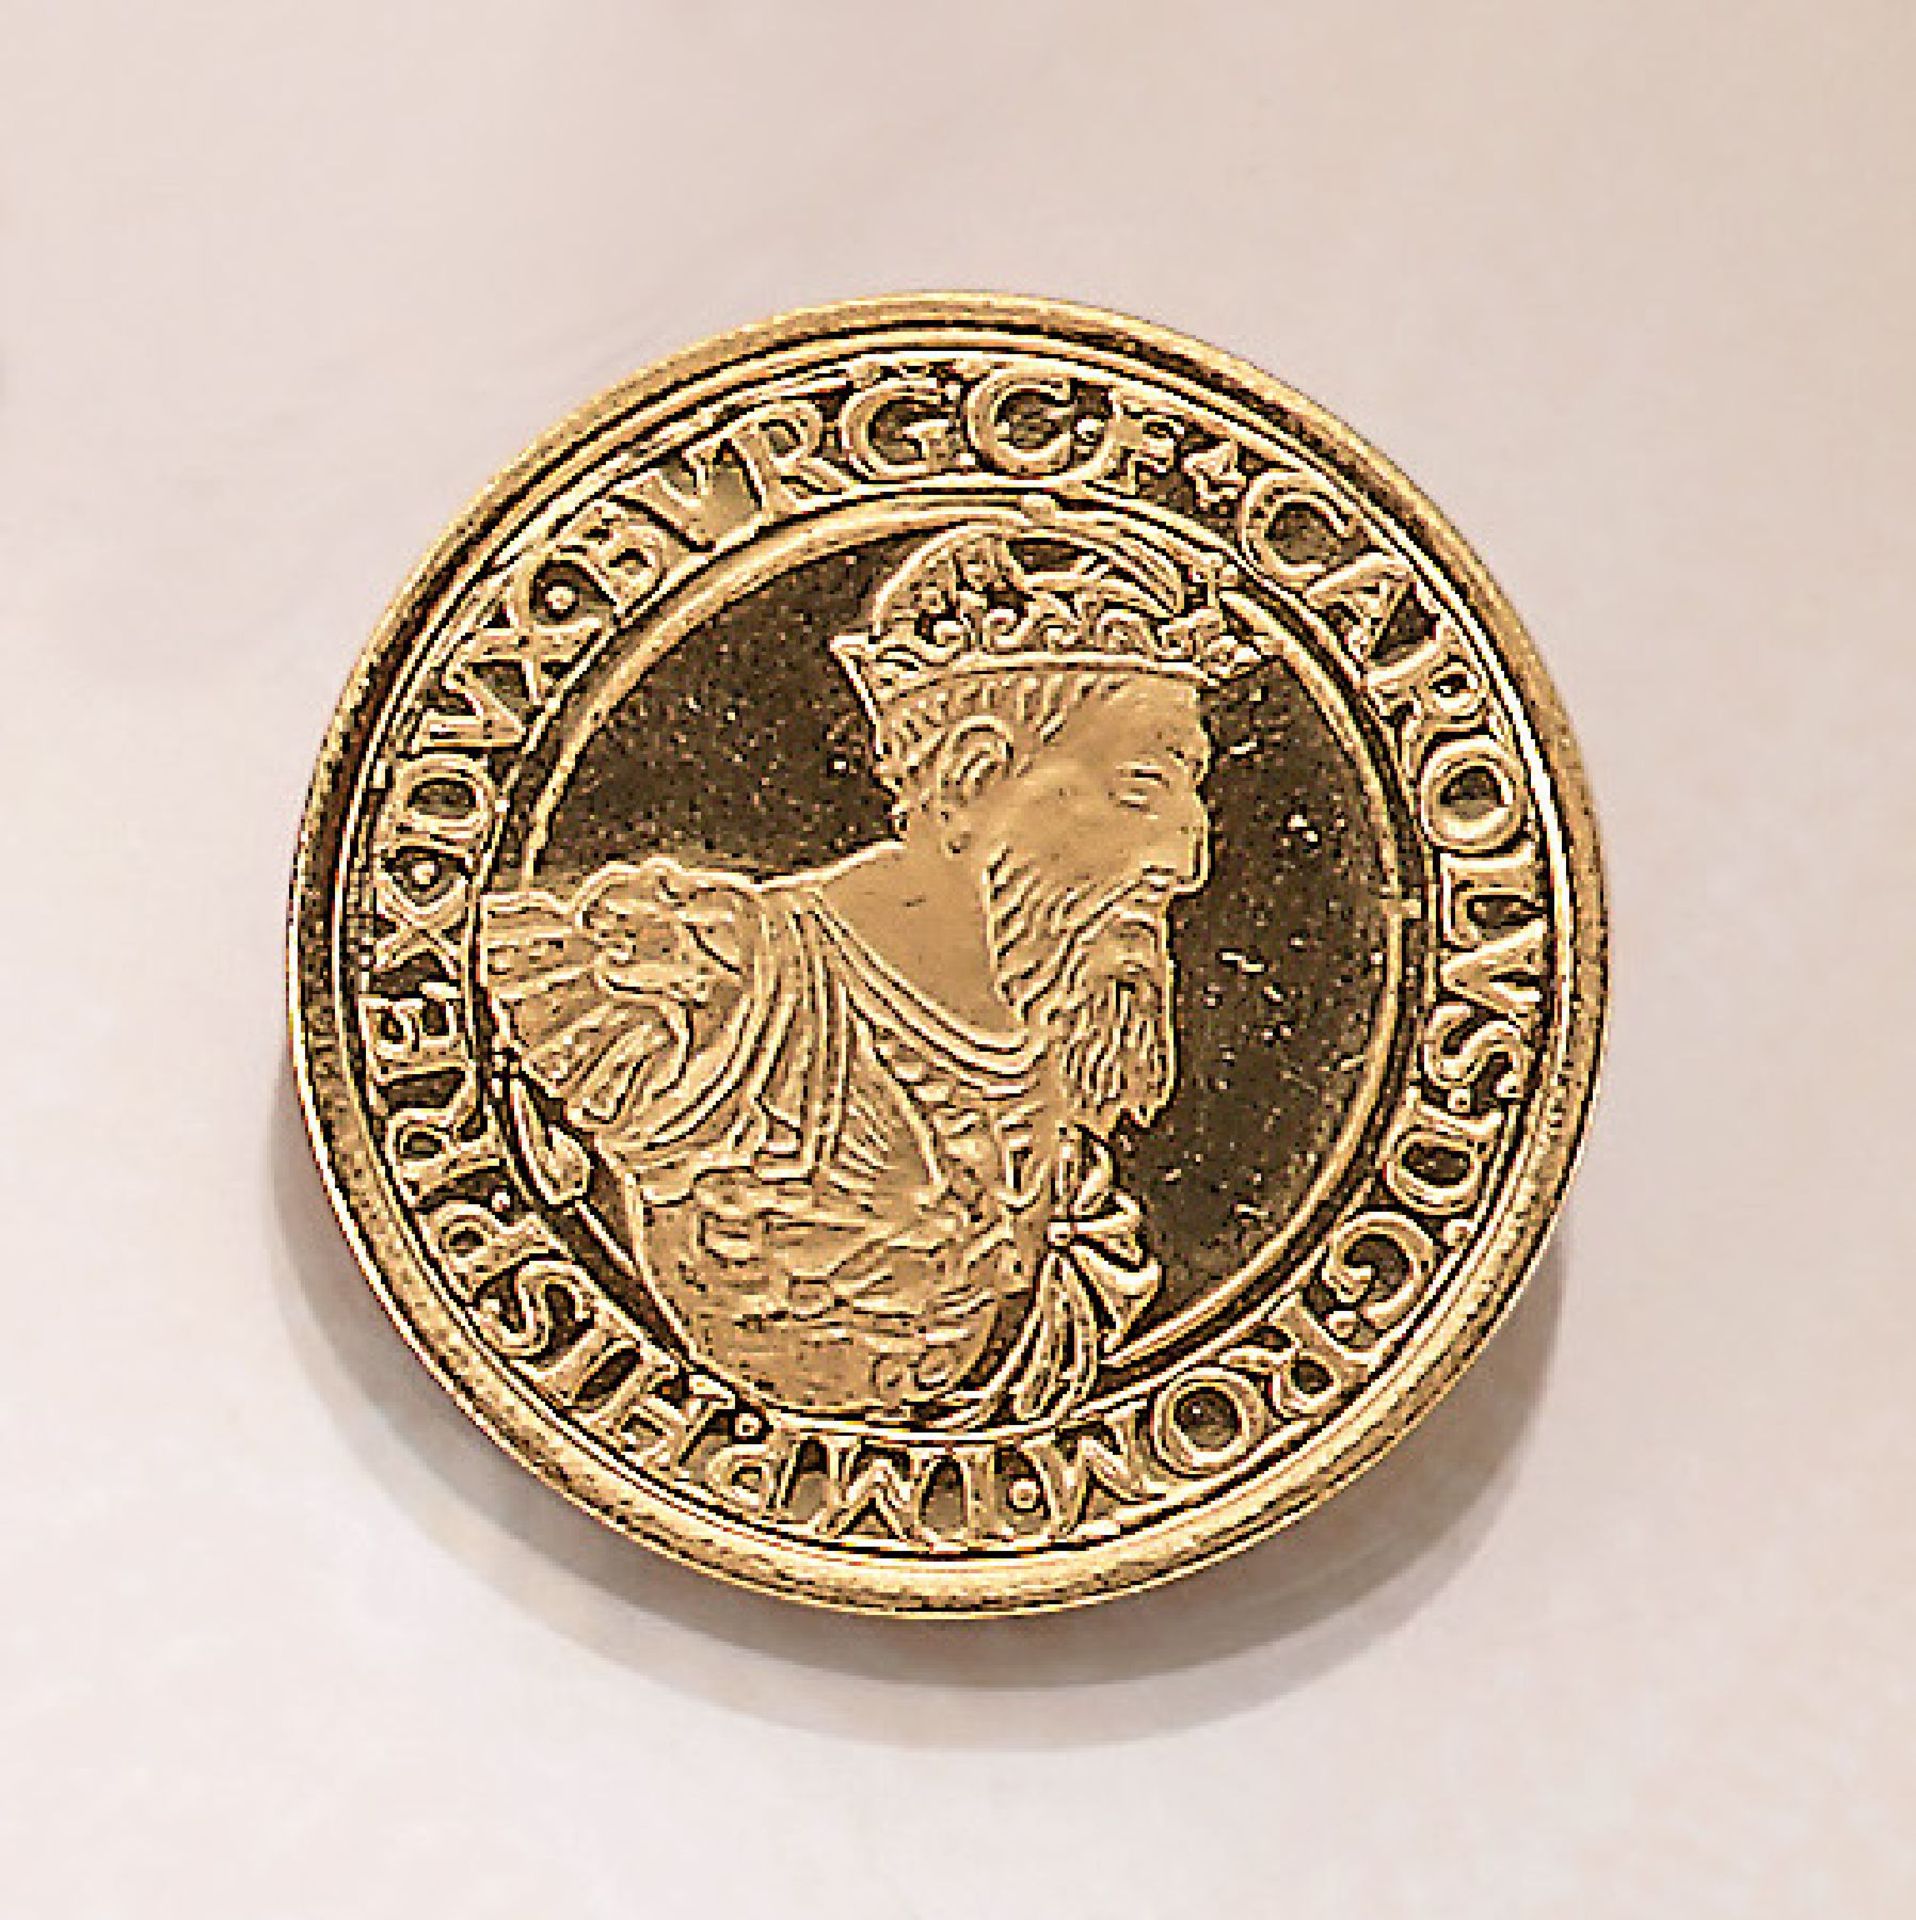 Goldmünze, 50 ECU, Belgien, 1987, Karl V., 30 Jahre römische Verträge, 900/000, 17.33 g